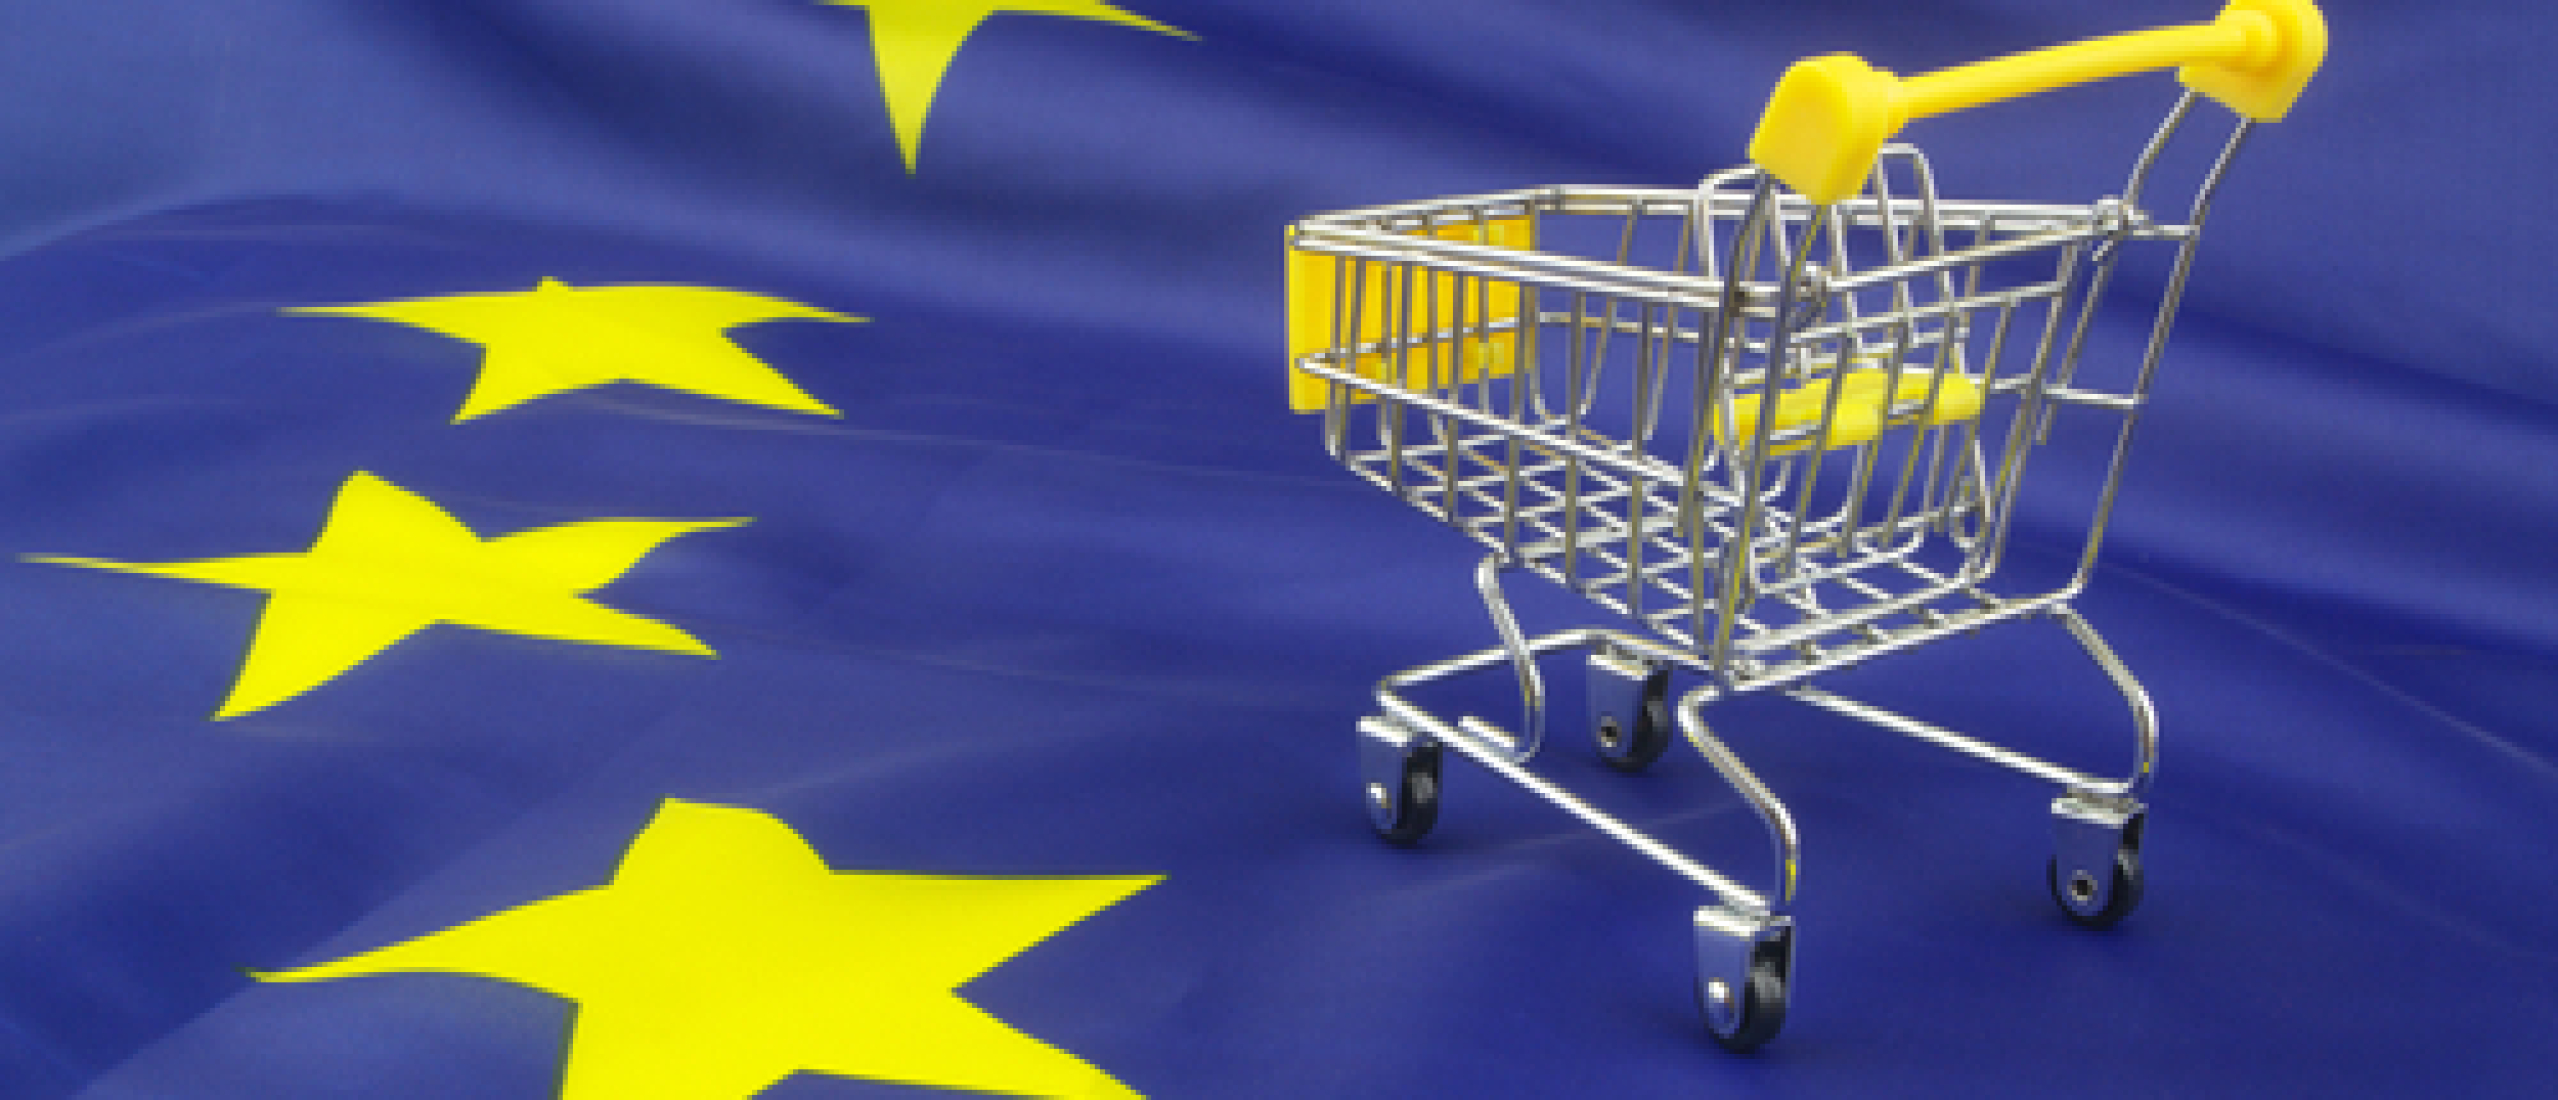 Juridische aspecten van E-commerce in de EU